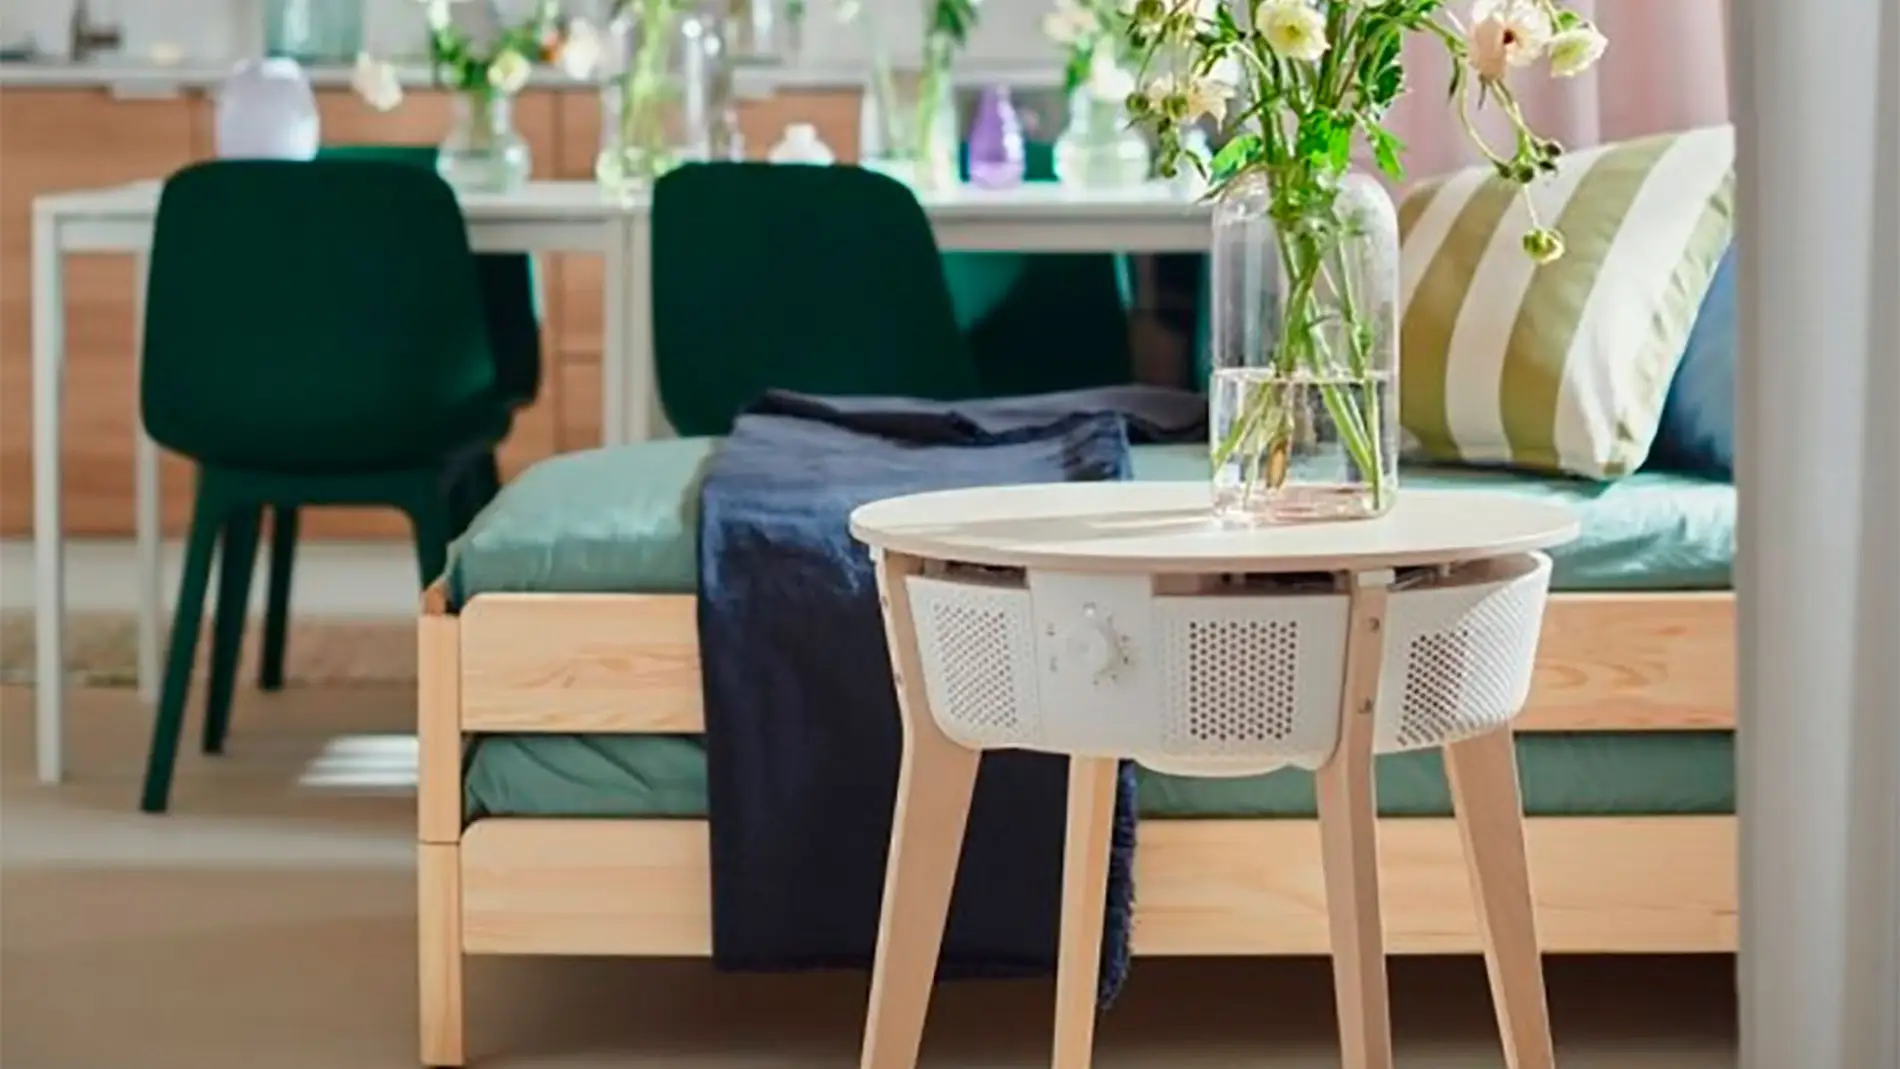 Esta mesa auxiliar de IKEA en realidad es un purificador inteligente